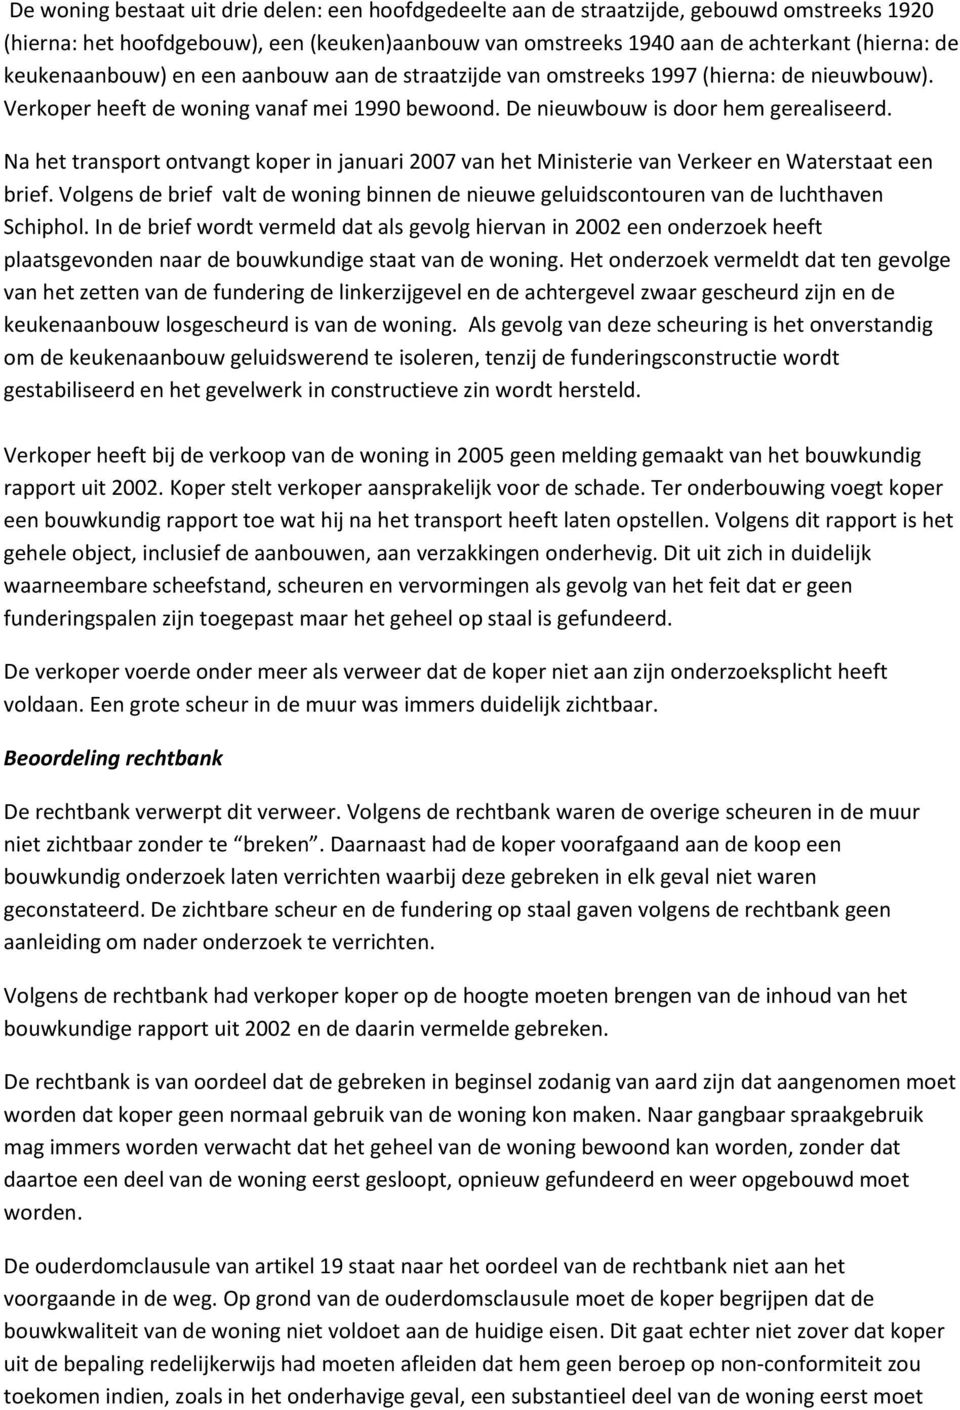 Na het transport ontvangt koper in januari 2007 van het Ministerie van Verkeer en Waterstaat een brief. Volgens de brief valt de woning binnen de nieuwe geluidscontouren van de luchthaven Schiphol.